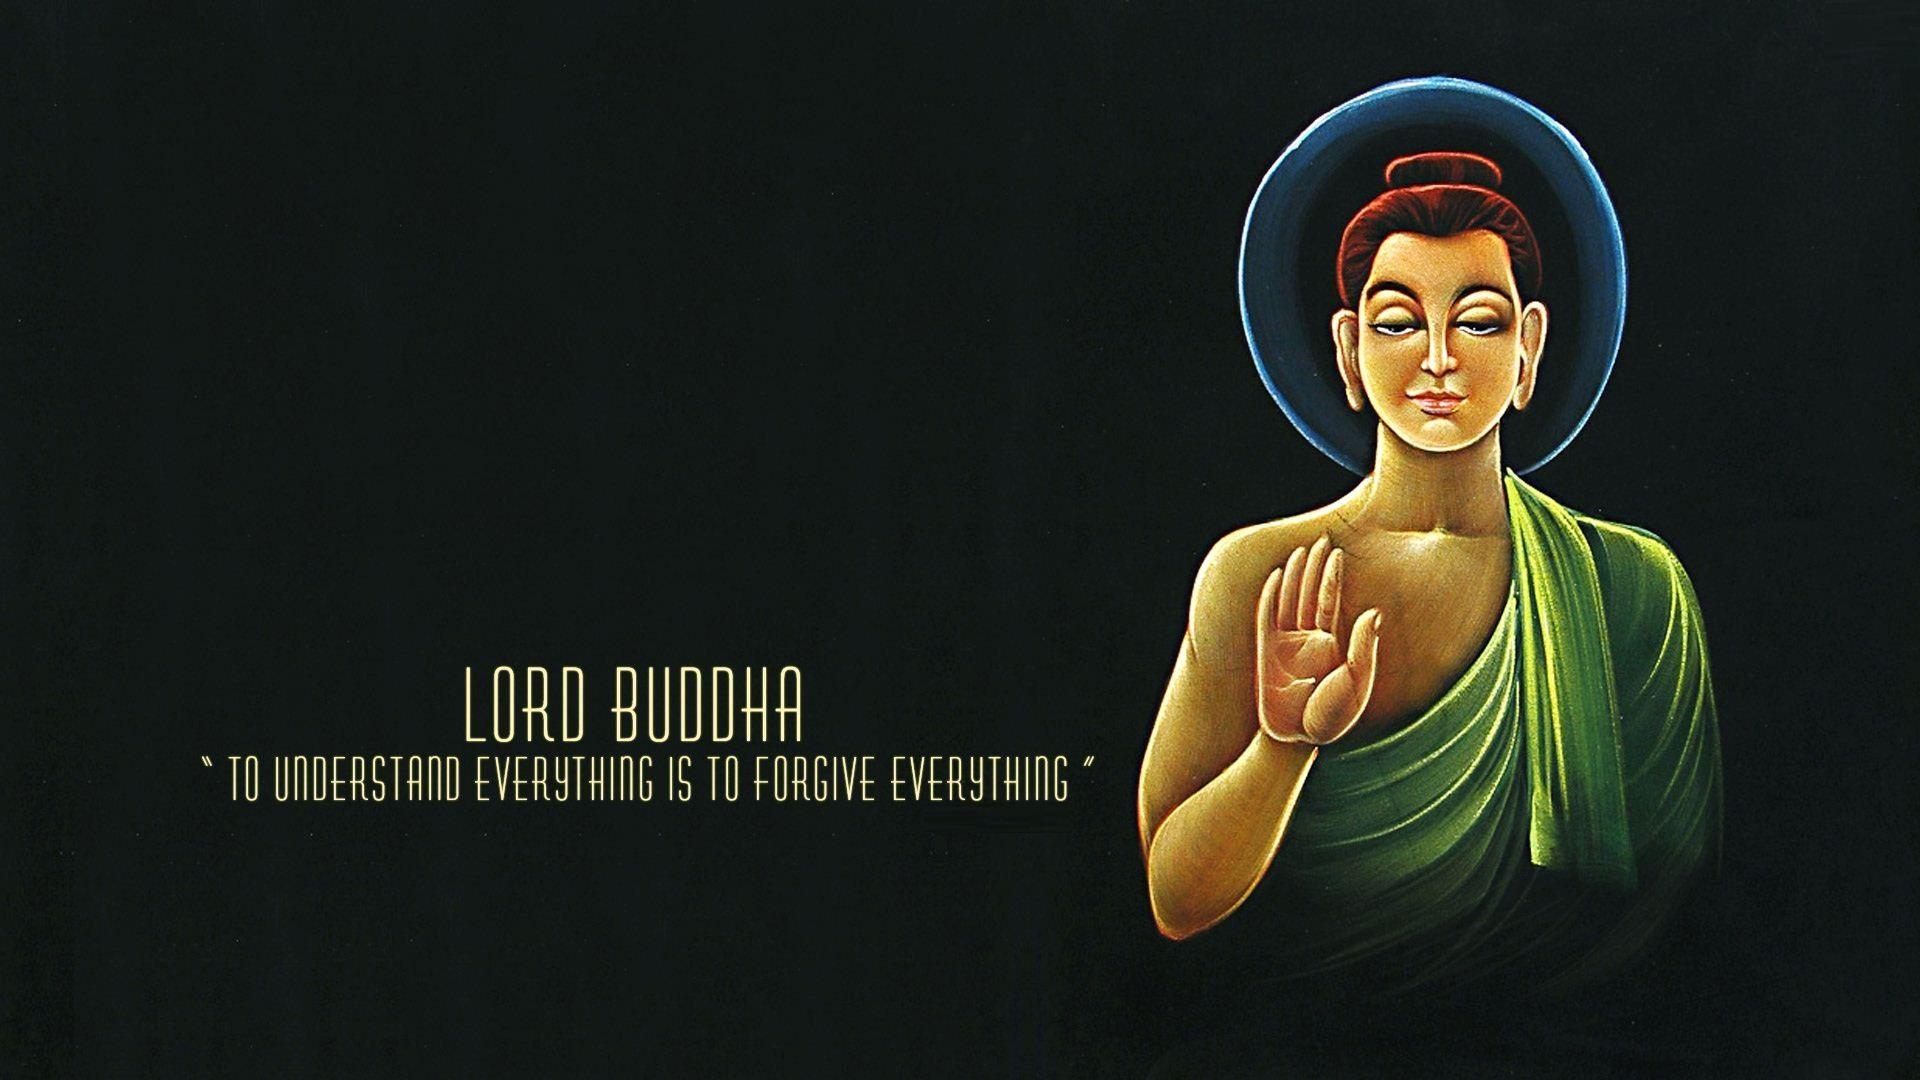 Lord Buddha message HD wallpaper. HD Wallpaper Rocks